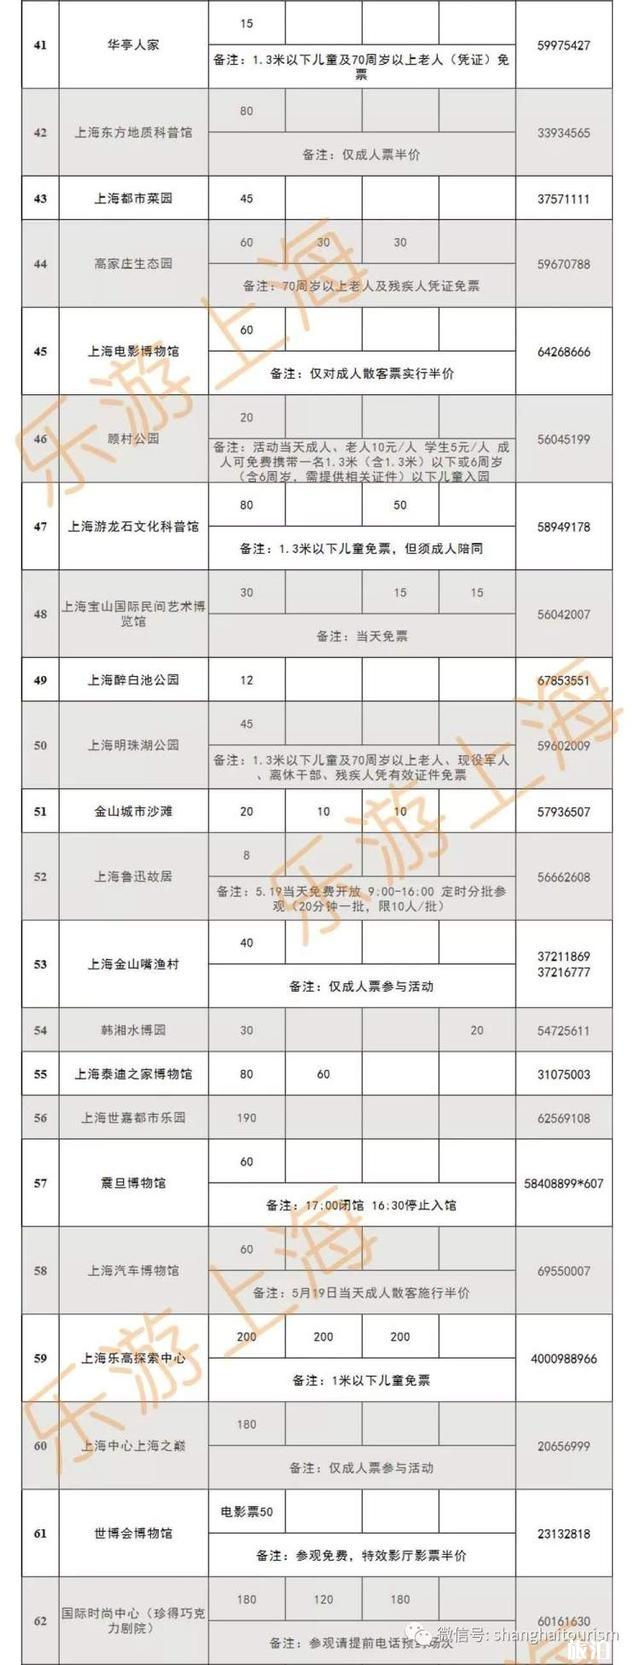 2019上海5月19日中国旅游日门票优惠信息汇总